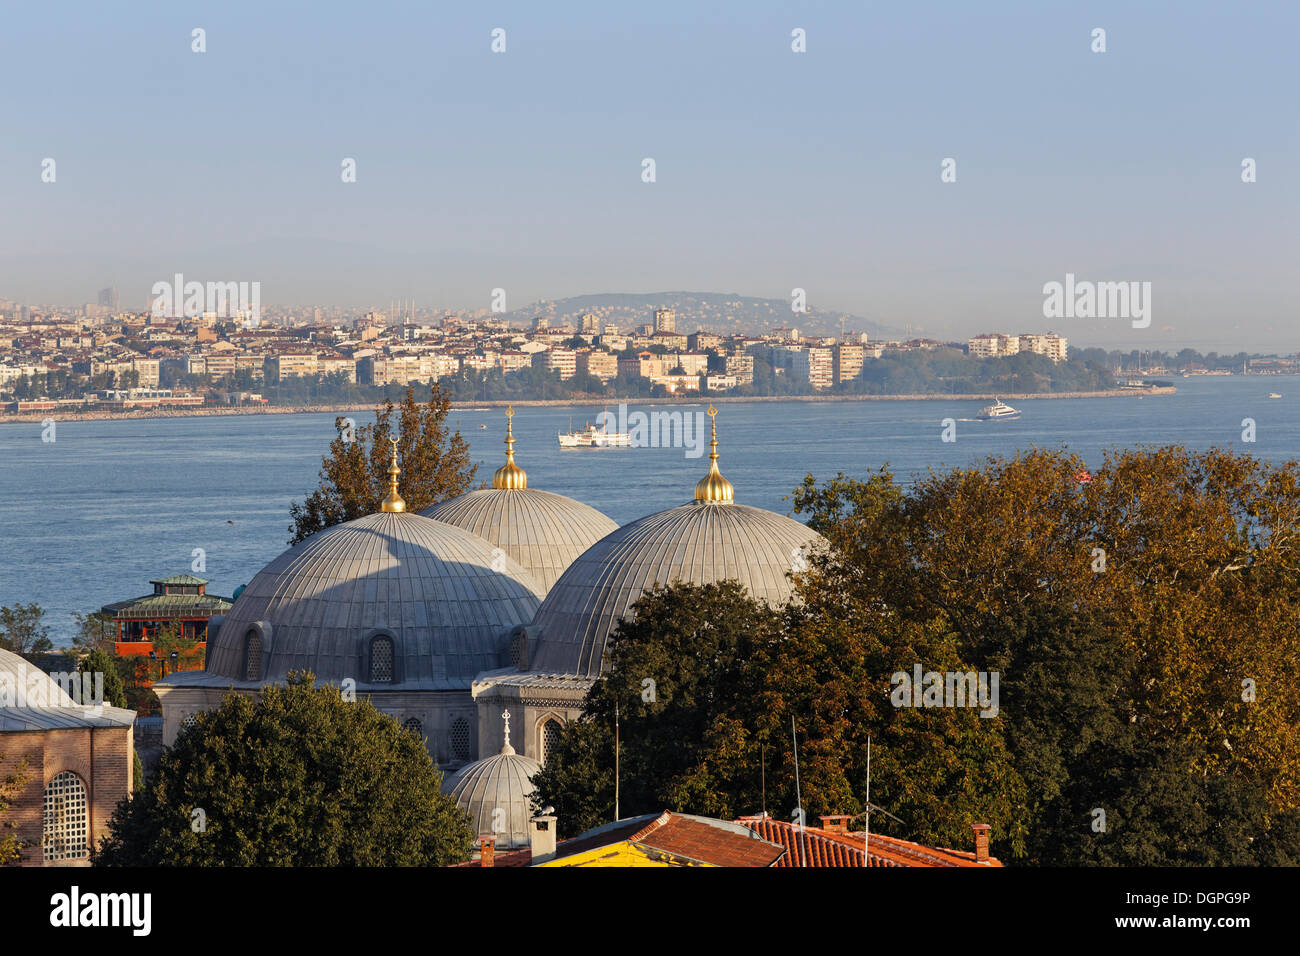 Mausolées dans la cour de la basilique Sainte-Sophie, la vieille ville de Sultanahmet, l'arrêt Bosphorus, Istanbul, Turquie, Europe Banque D'Images